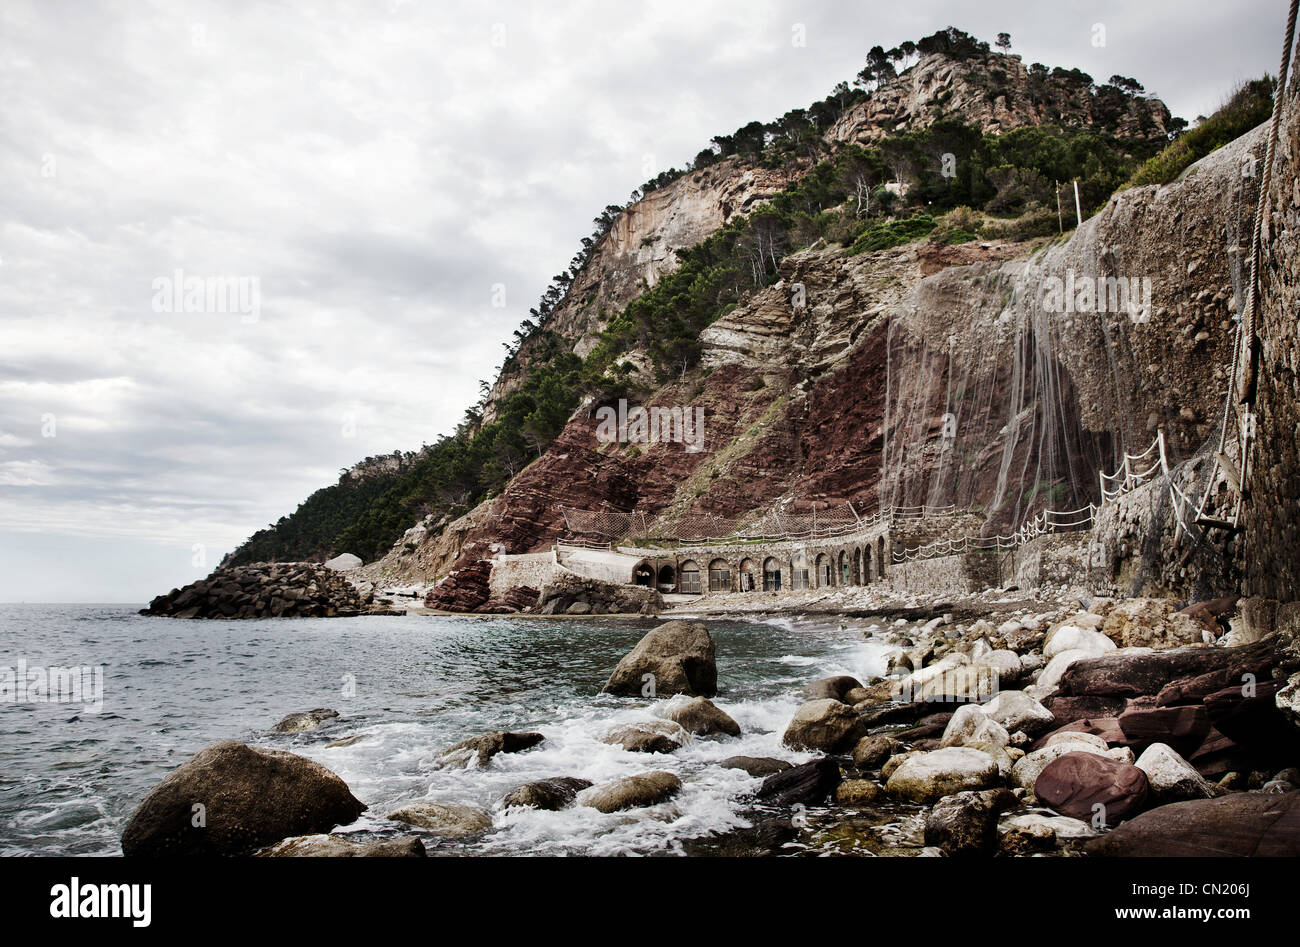 Sea and rocks, Majorca, Spain Stock Photo